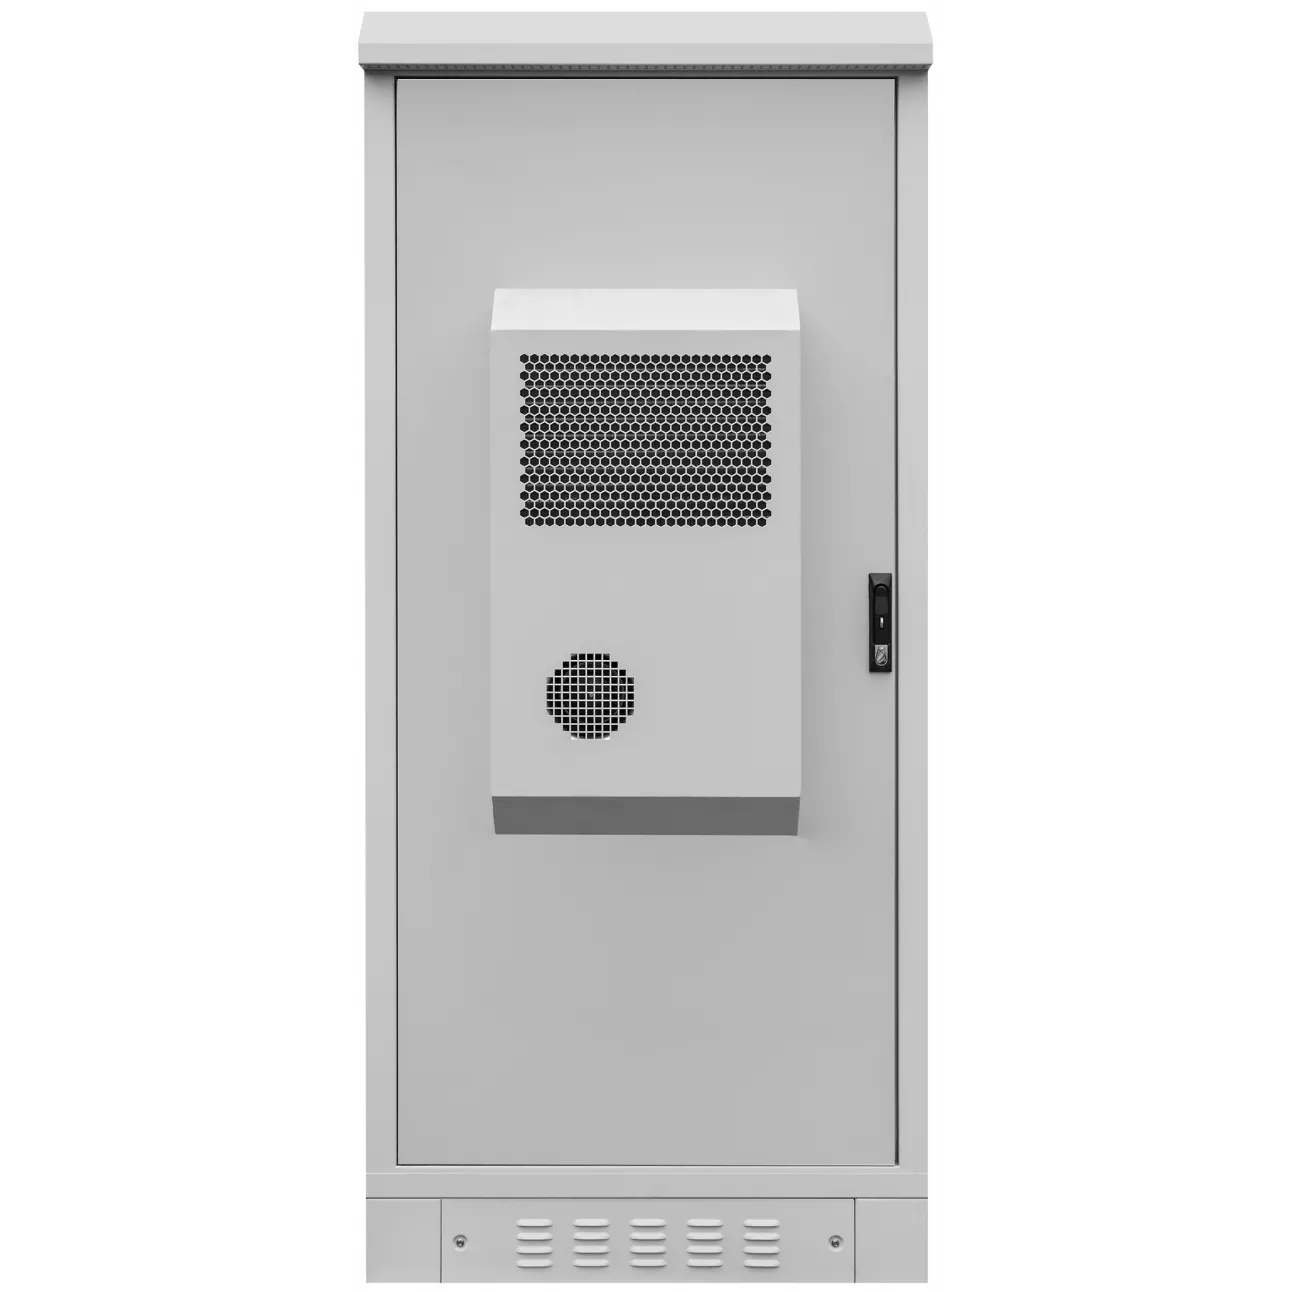 Шкаф климатический 22U 900х900мм с кондиционером 1500Вт 48VDC